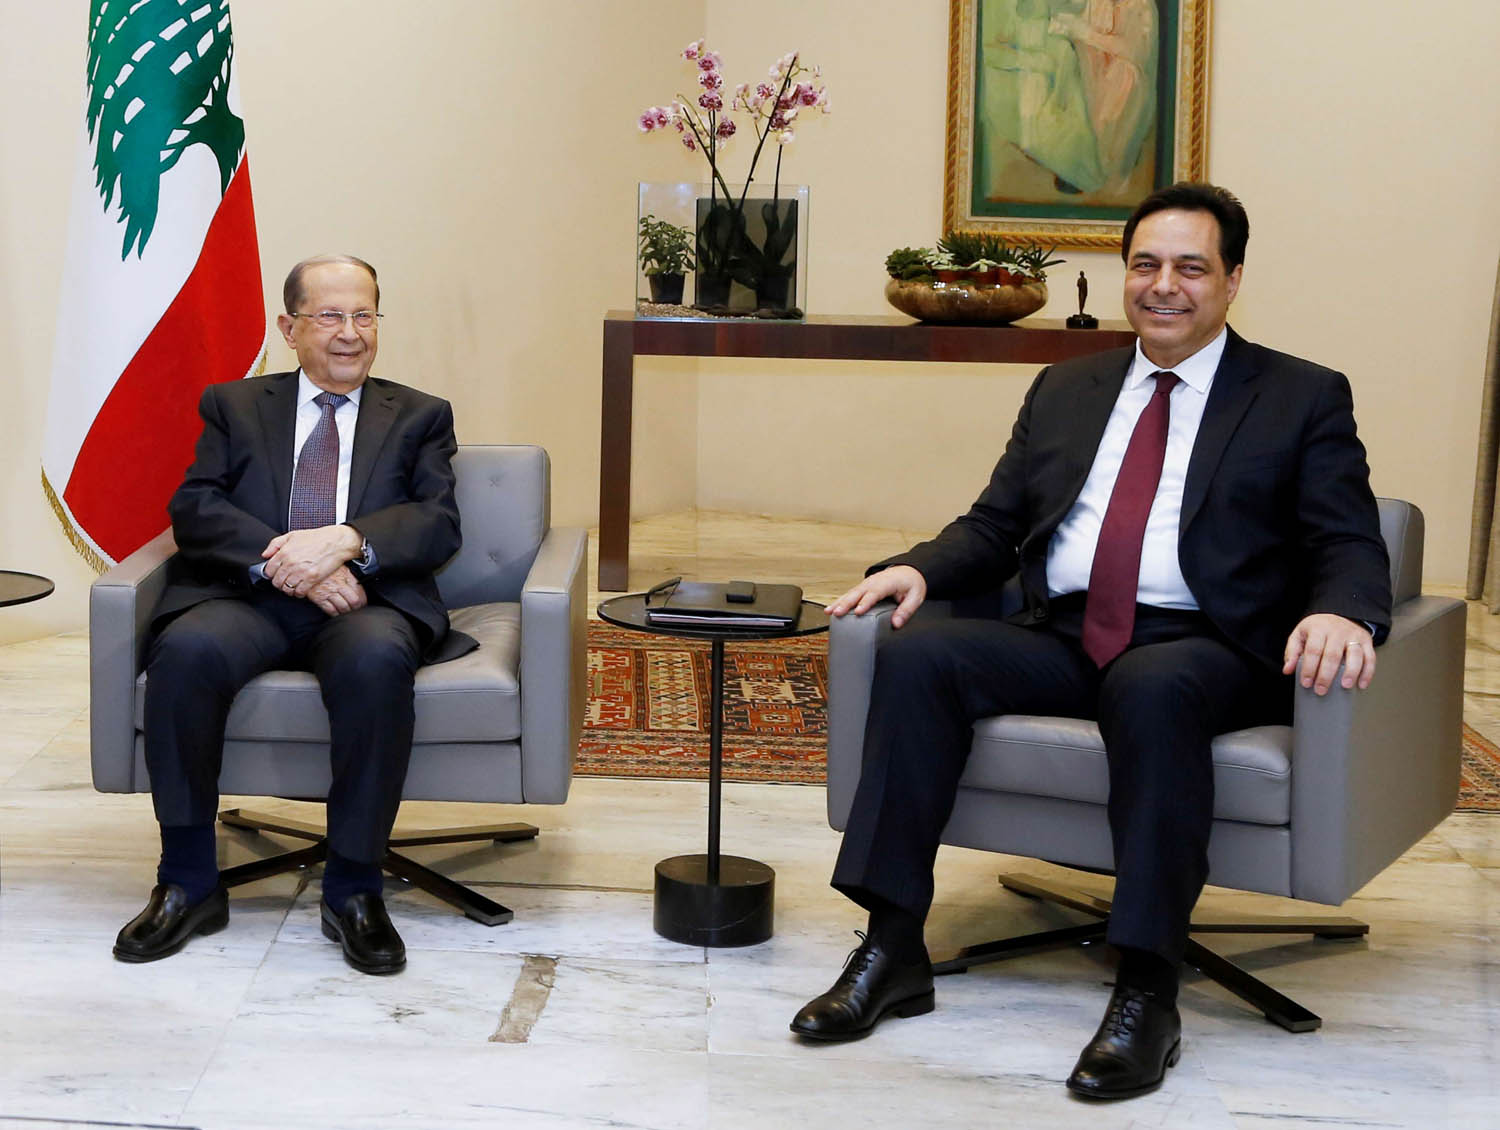 الرئيس اللبناني ميشال عون يستقبل رئيس الوزراء المستقيل حسان دياب